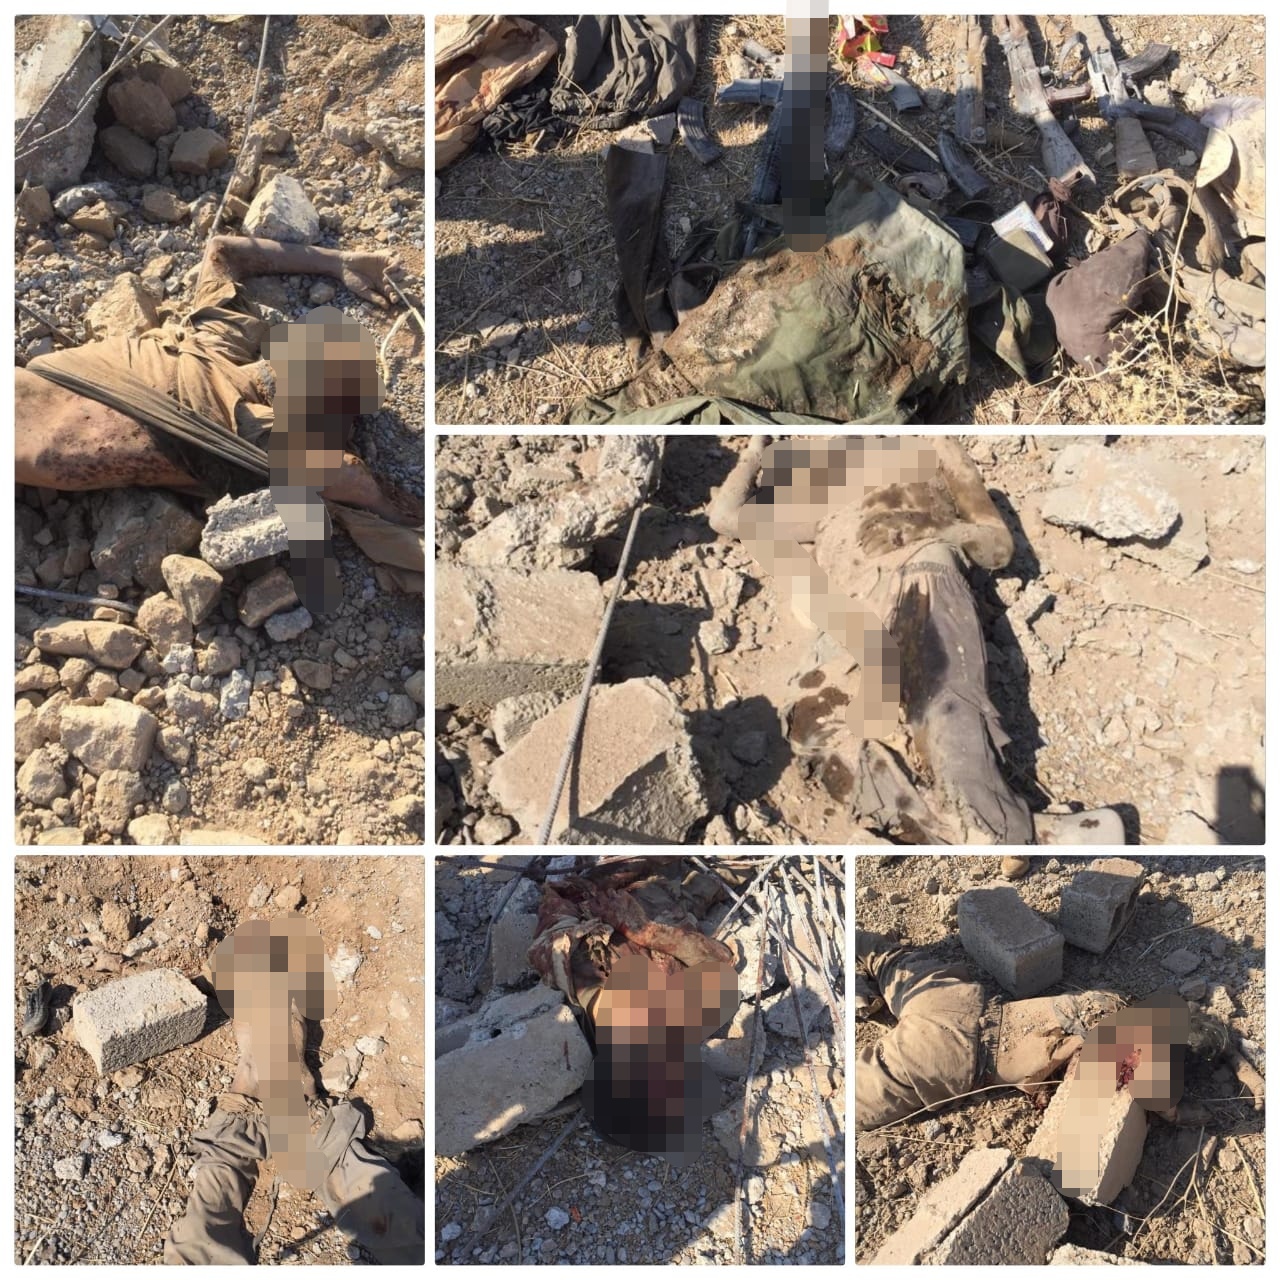 مقتل عناصر من داعش بقصف جوي دولي- عراقي قرب اقليم كوردستان